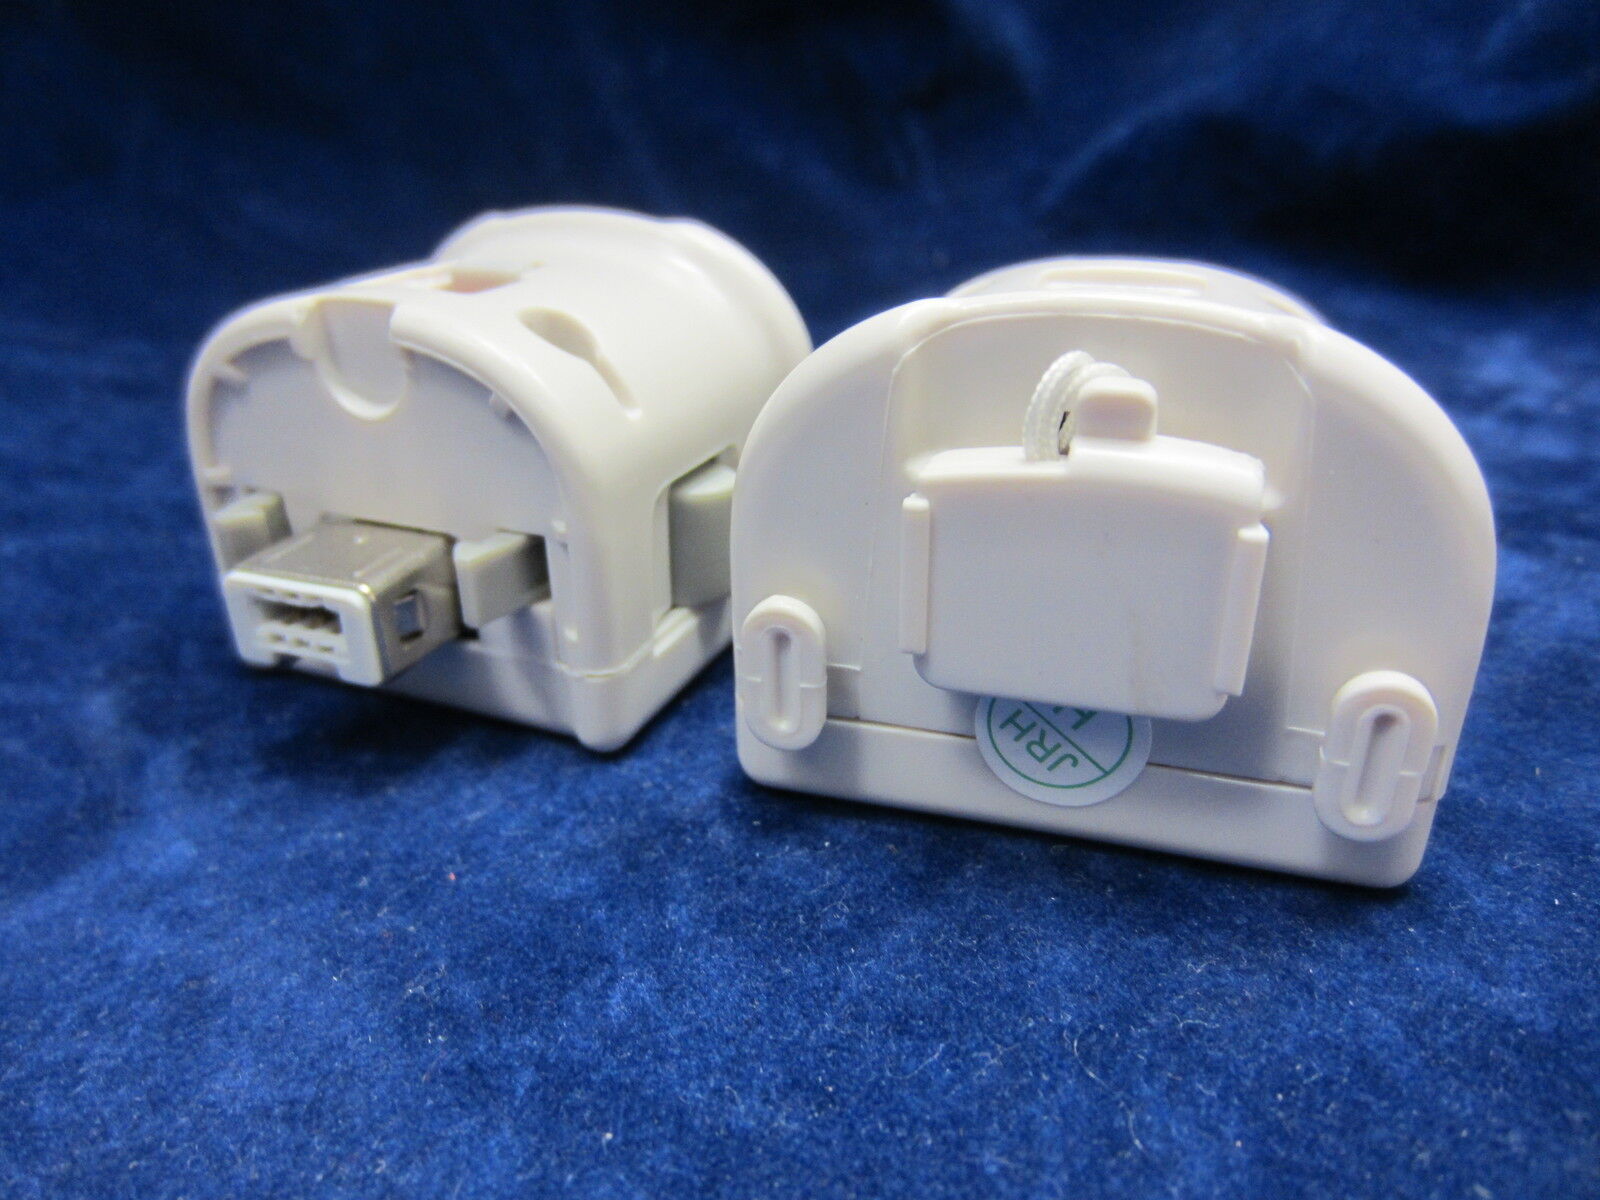 2 x Old Skool Motion Plus Sensor Adapters for Nintendo Wii / WiiU - White OldSkool OS-0665